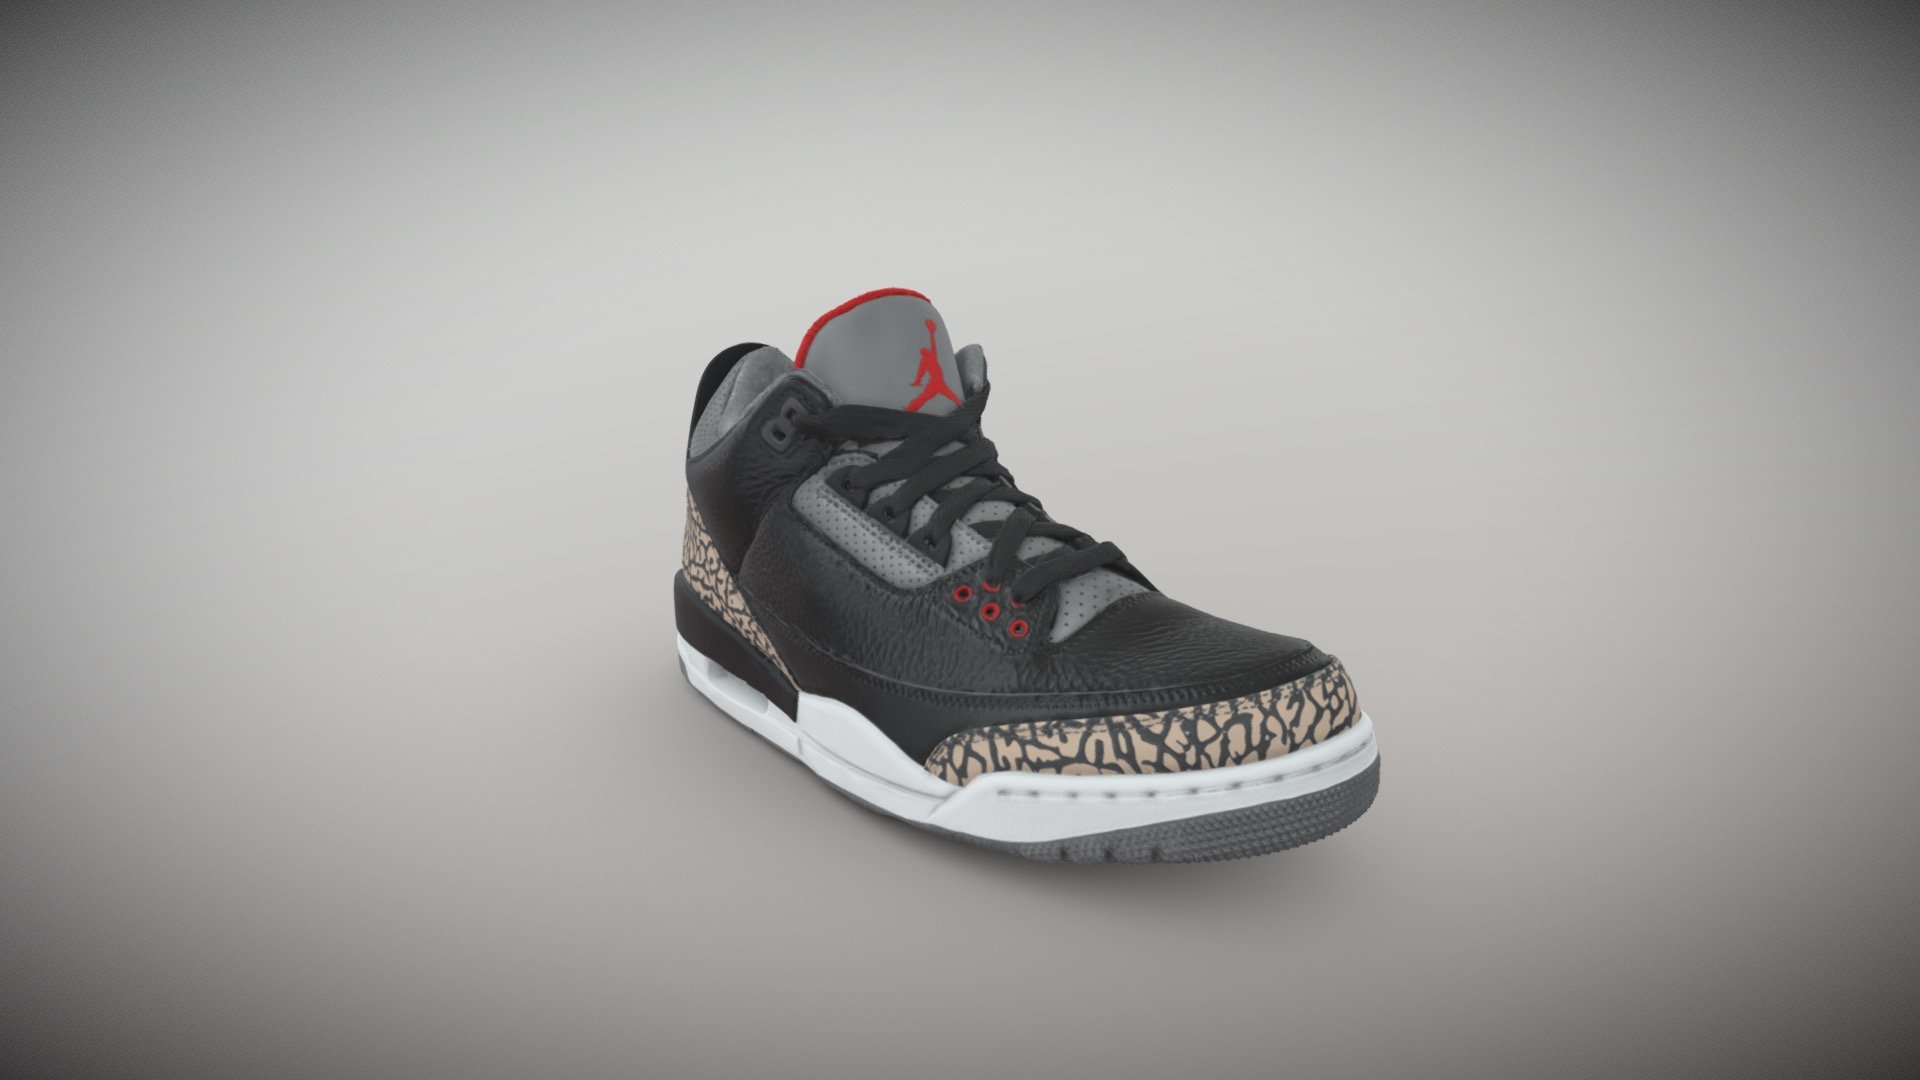 Air Jordan 3's